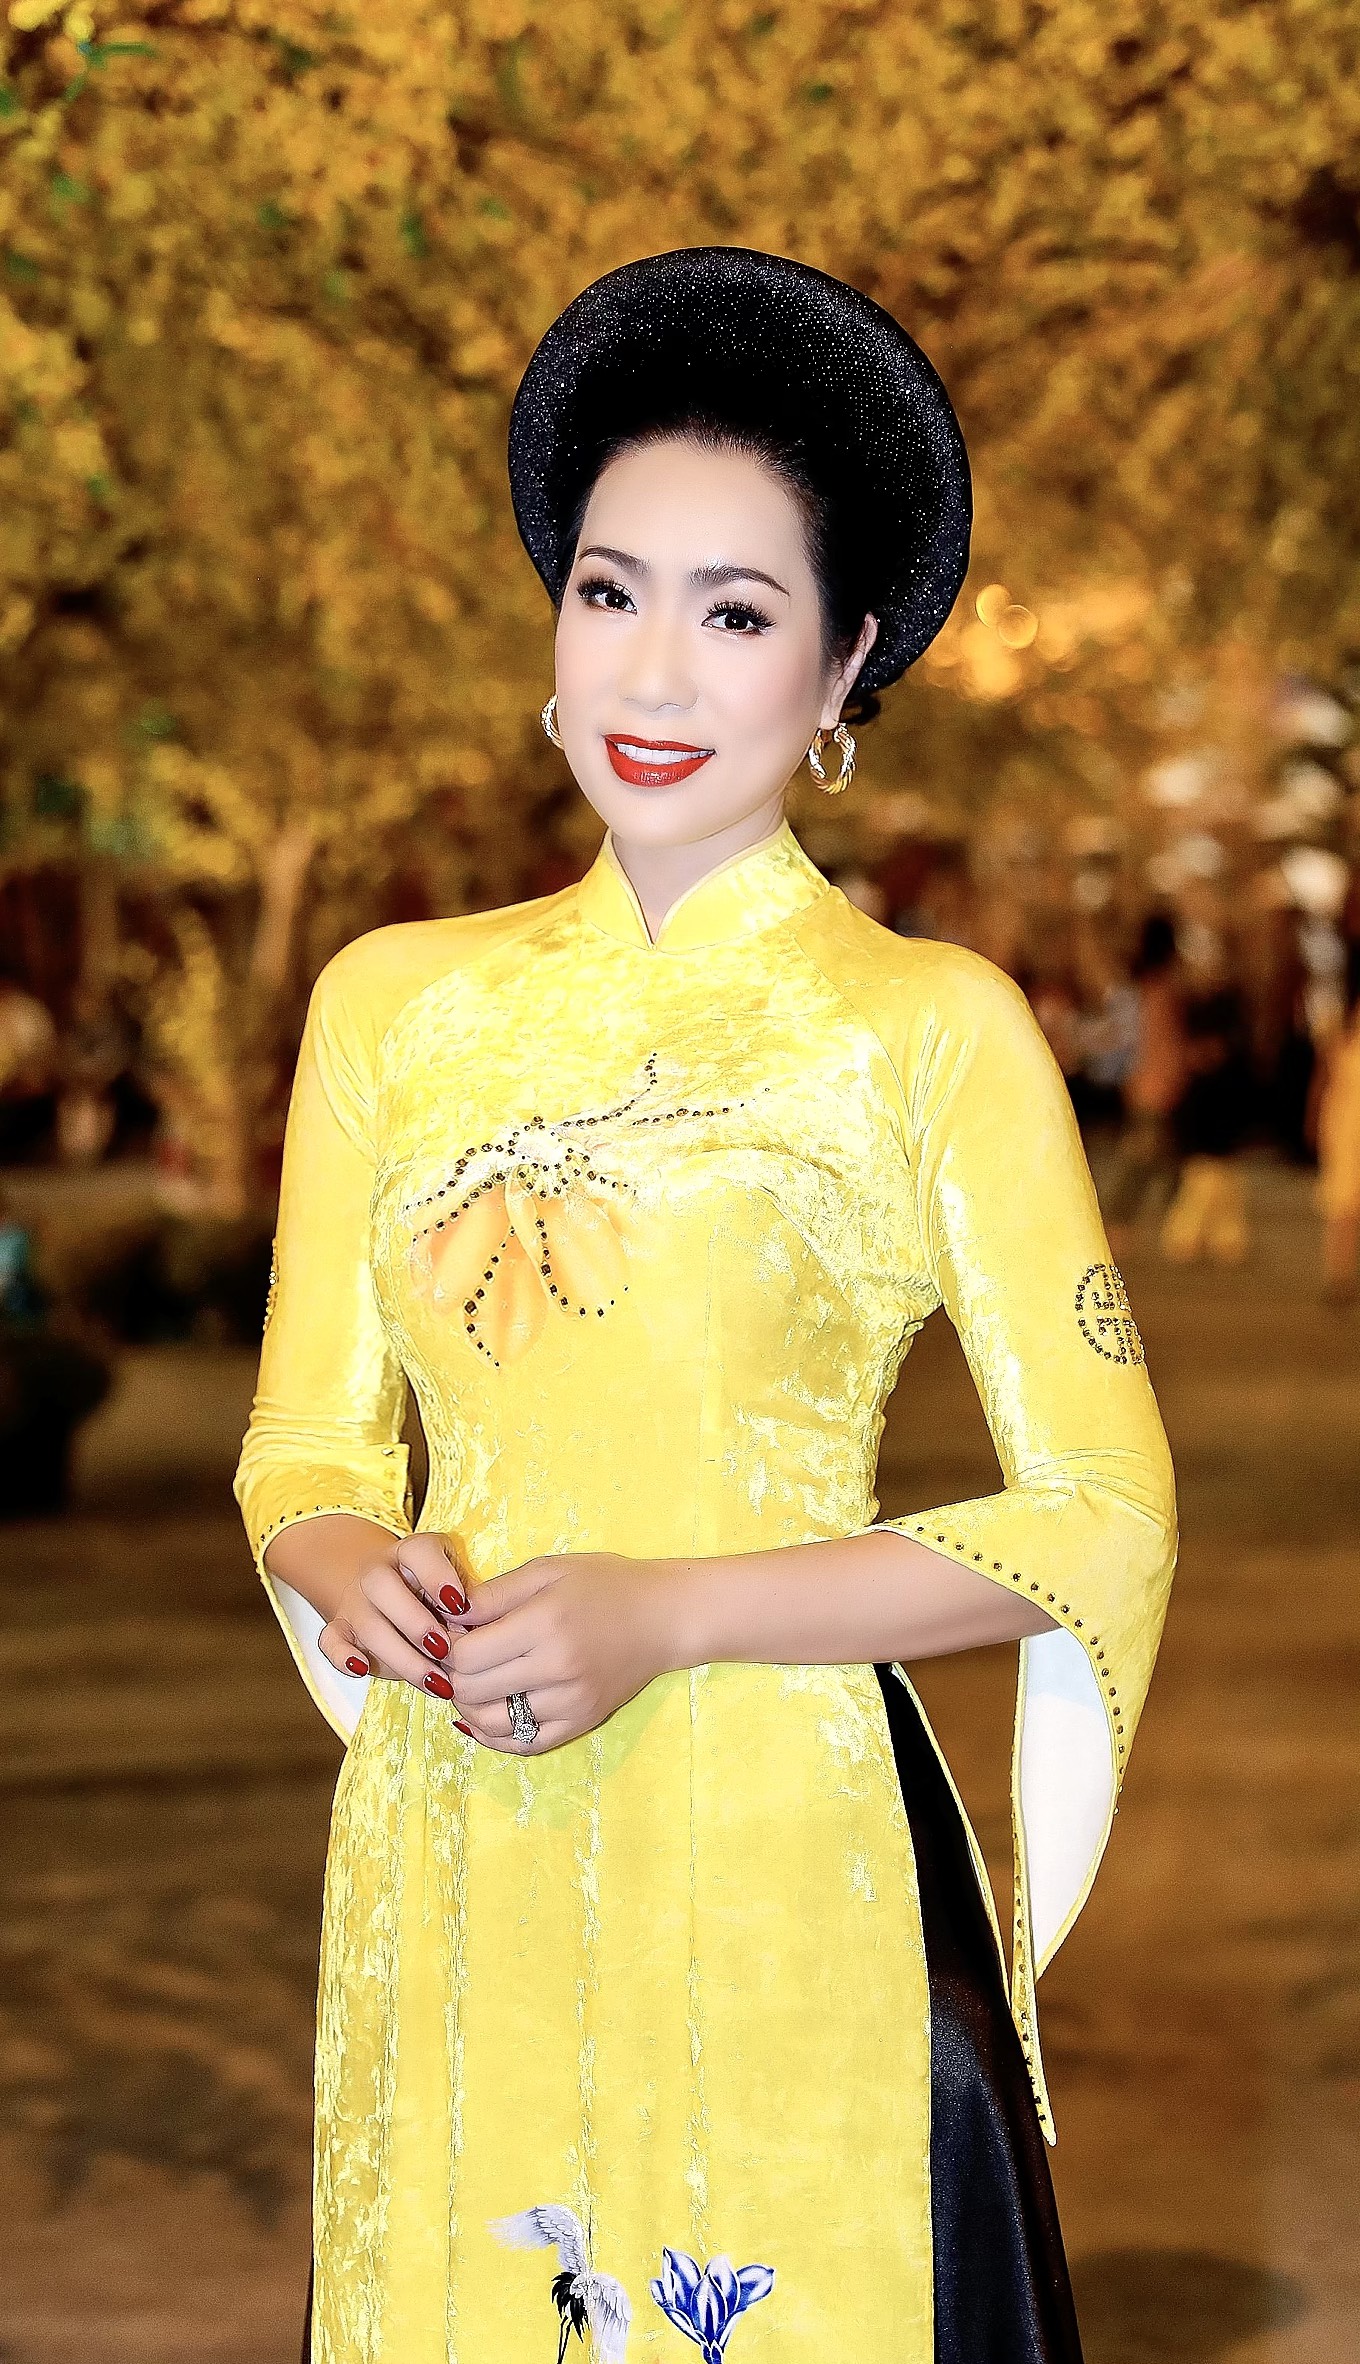 trinh kim chi 4 1 NSƯT Trịnh Kim Chi ứng cử đại biểu HĐND TP.HCM nhiệm kỳ 2021 2026